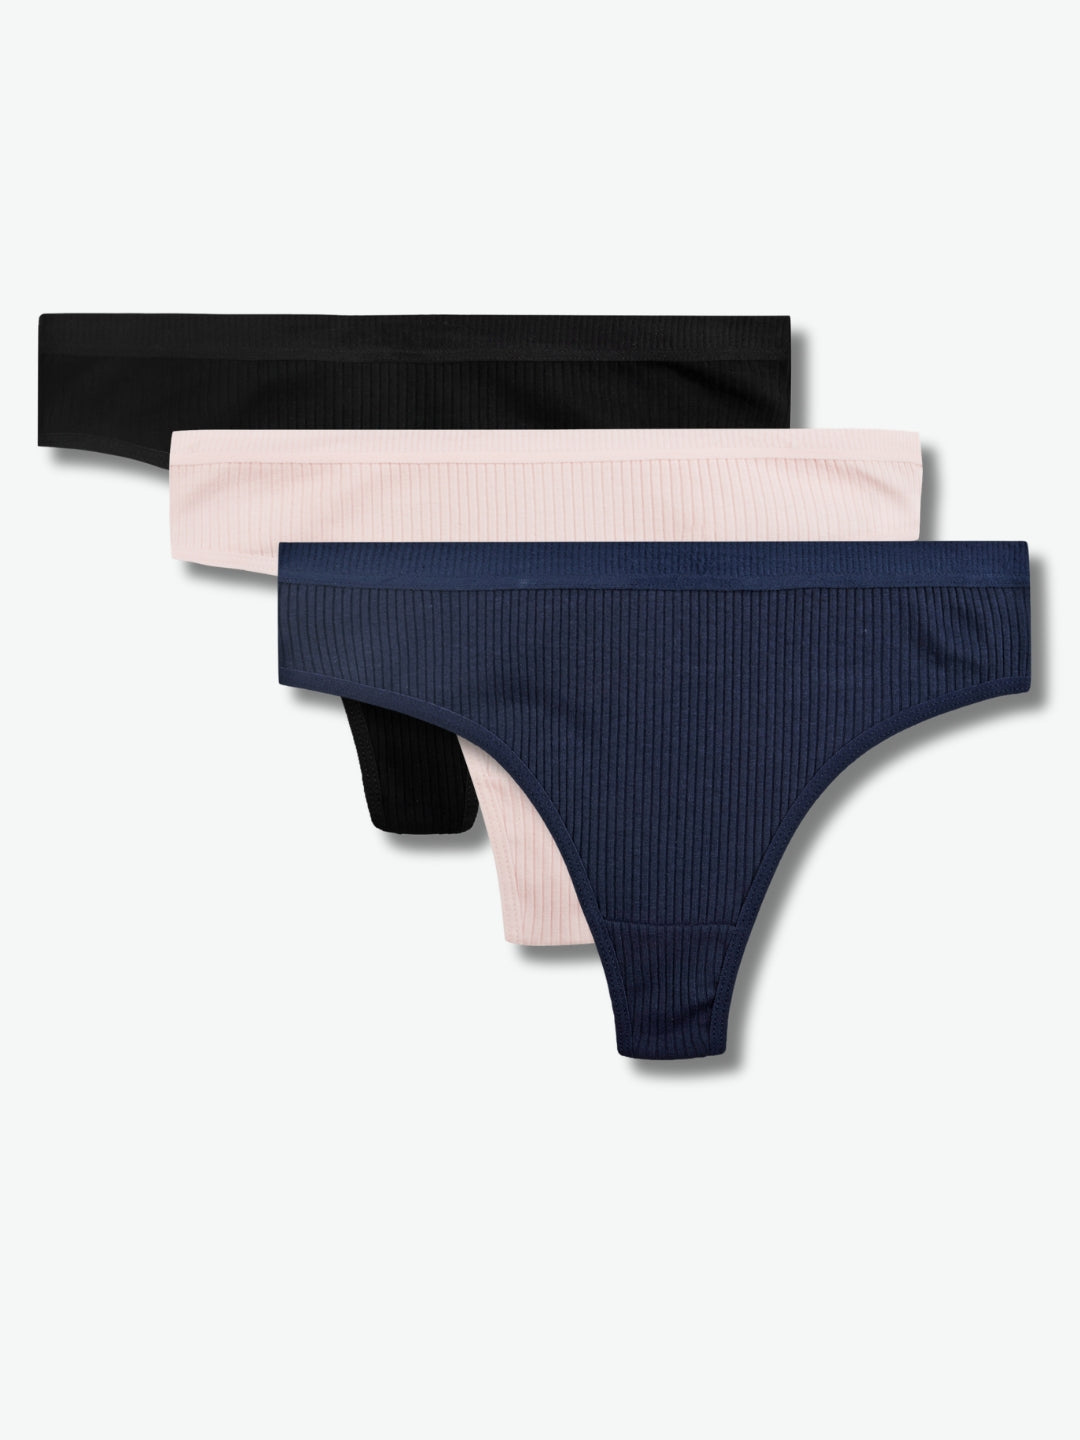 Womens Thong Panties, Pack Of 3, Navy Blue, Pink, Black – Tom & Gee